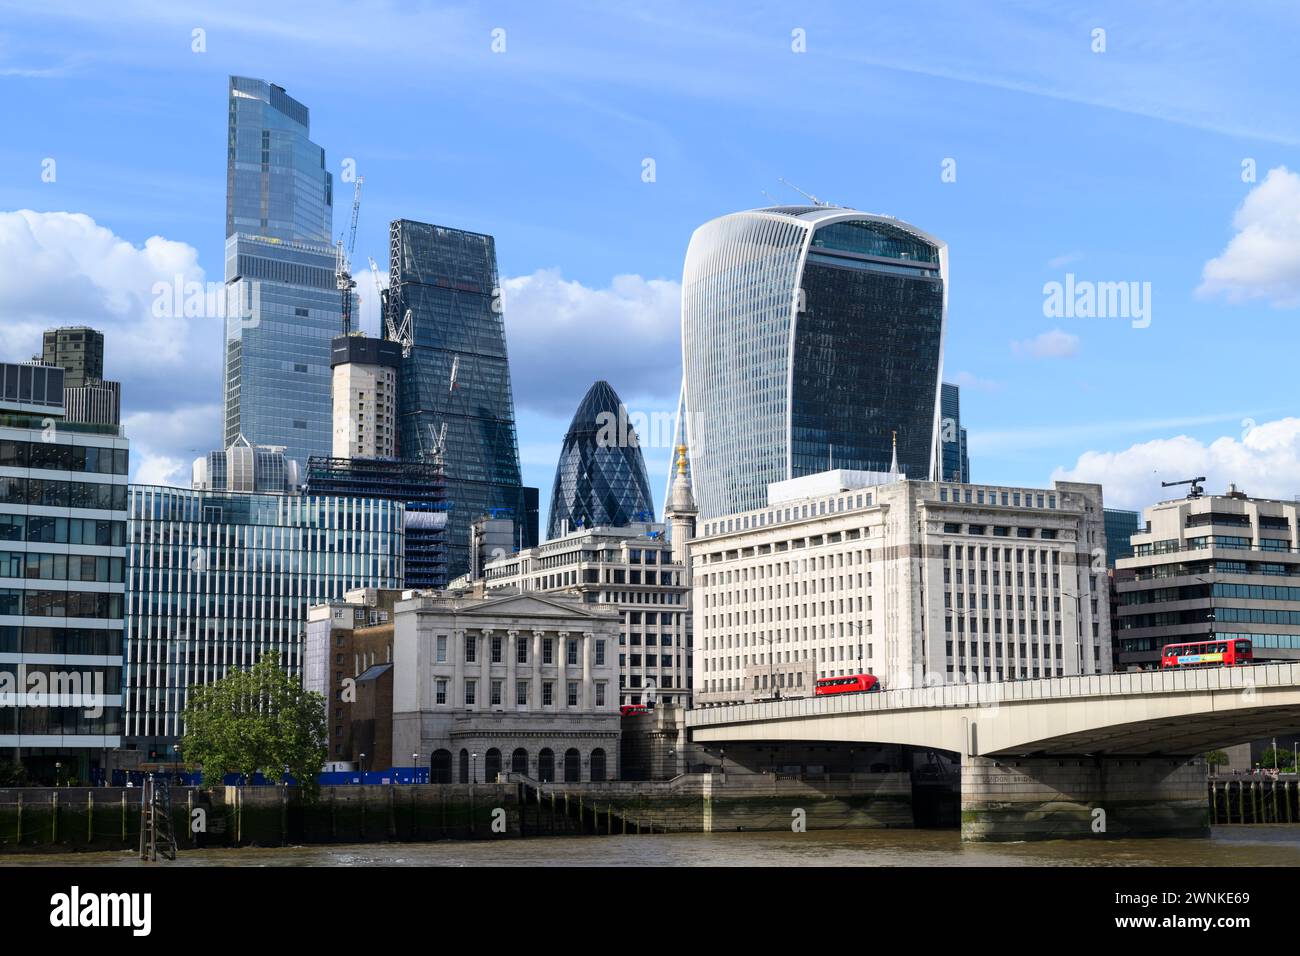 Wolkenkratzer des Finanzviertels City of London erheben sich im Hintergrund der London Bridge über die Themse. London Bridge, London, Großbritannien. 17 Ju Stockfoto